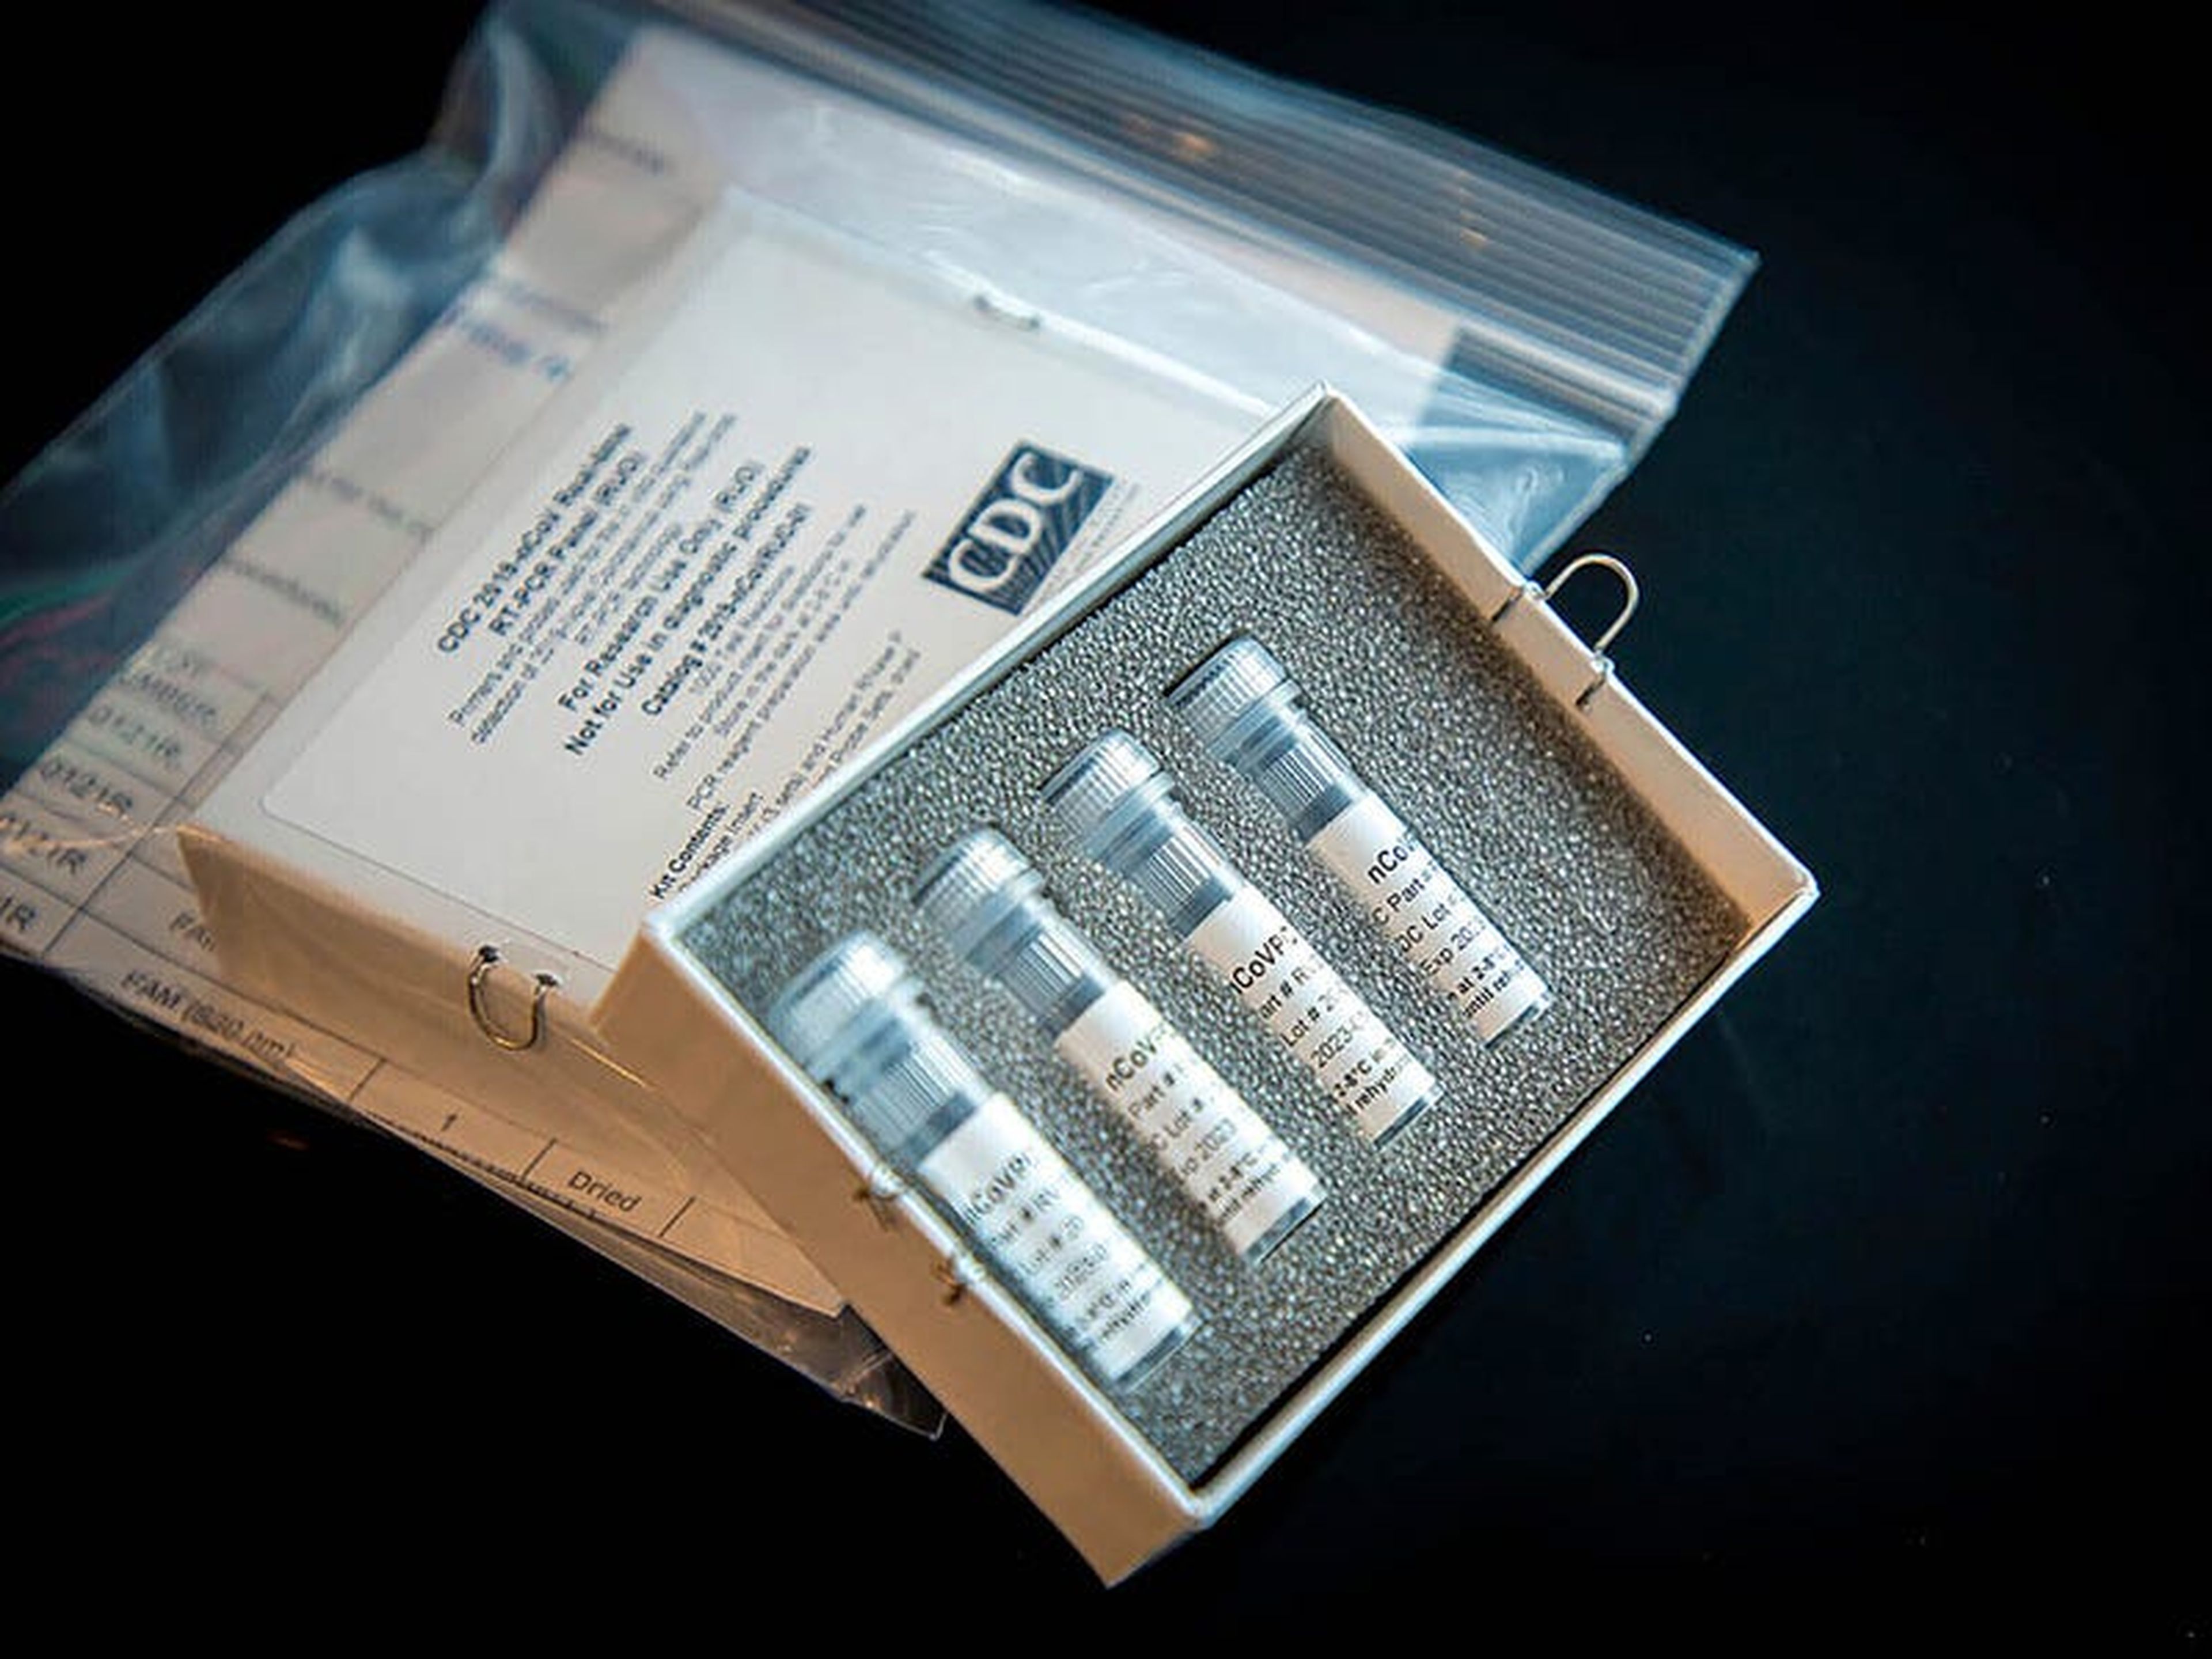 El kit de prueba de laboratorio de los CDC para el nuevo coronavirus. Esta imagen no está relacionada con la historia sobre las pruebas defectuosas.